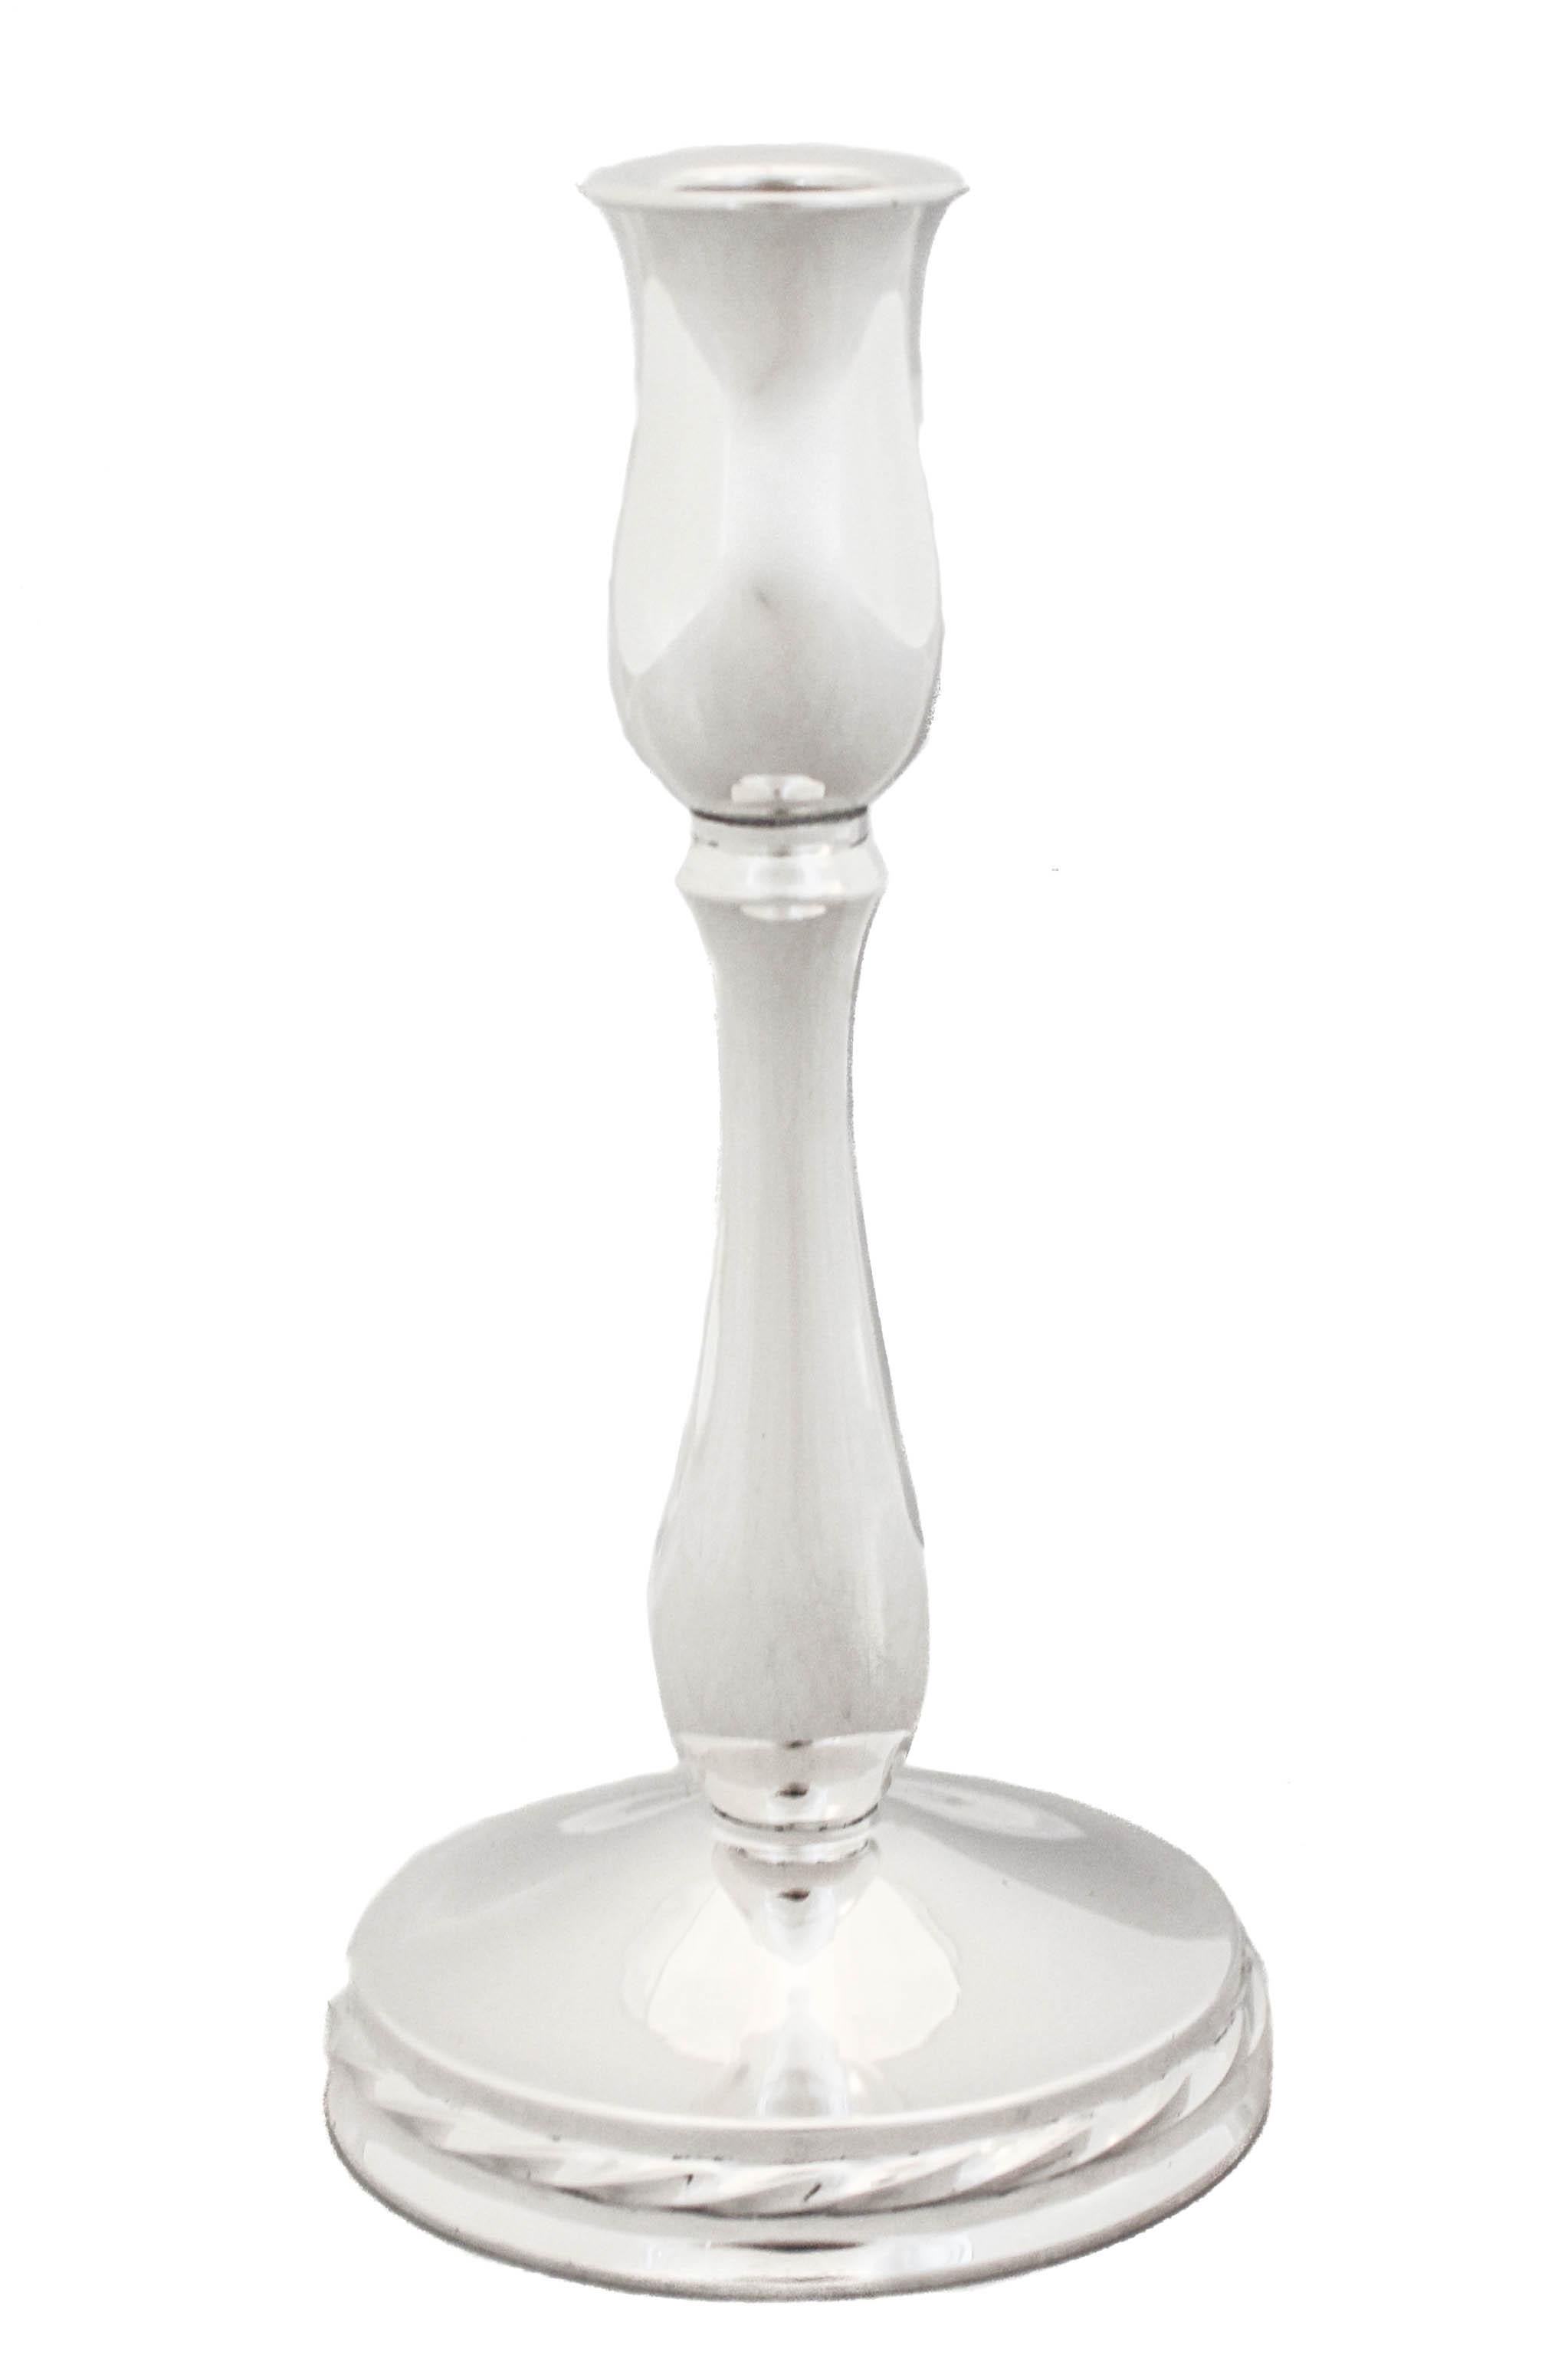 Ces chandeliers en argent sterling sont élégants et contemporains. Fabriquées par Towle Silversmiths, elles ont une forme de tulipe et un motif de godrons autour de la base. Parfait pour tout type de décor et intemporel.